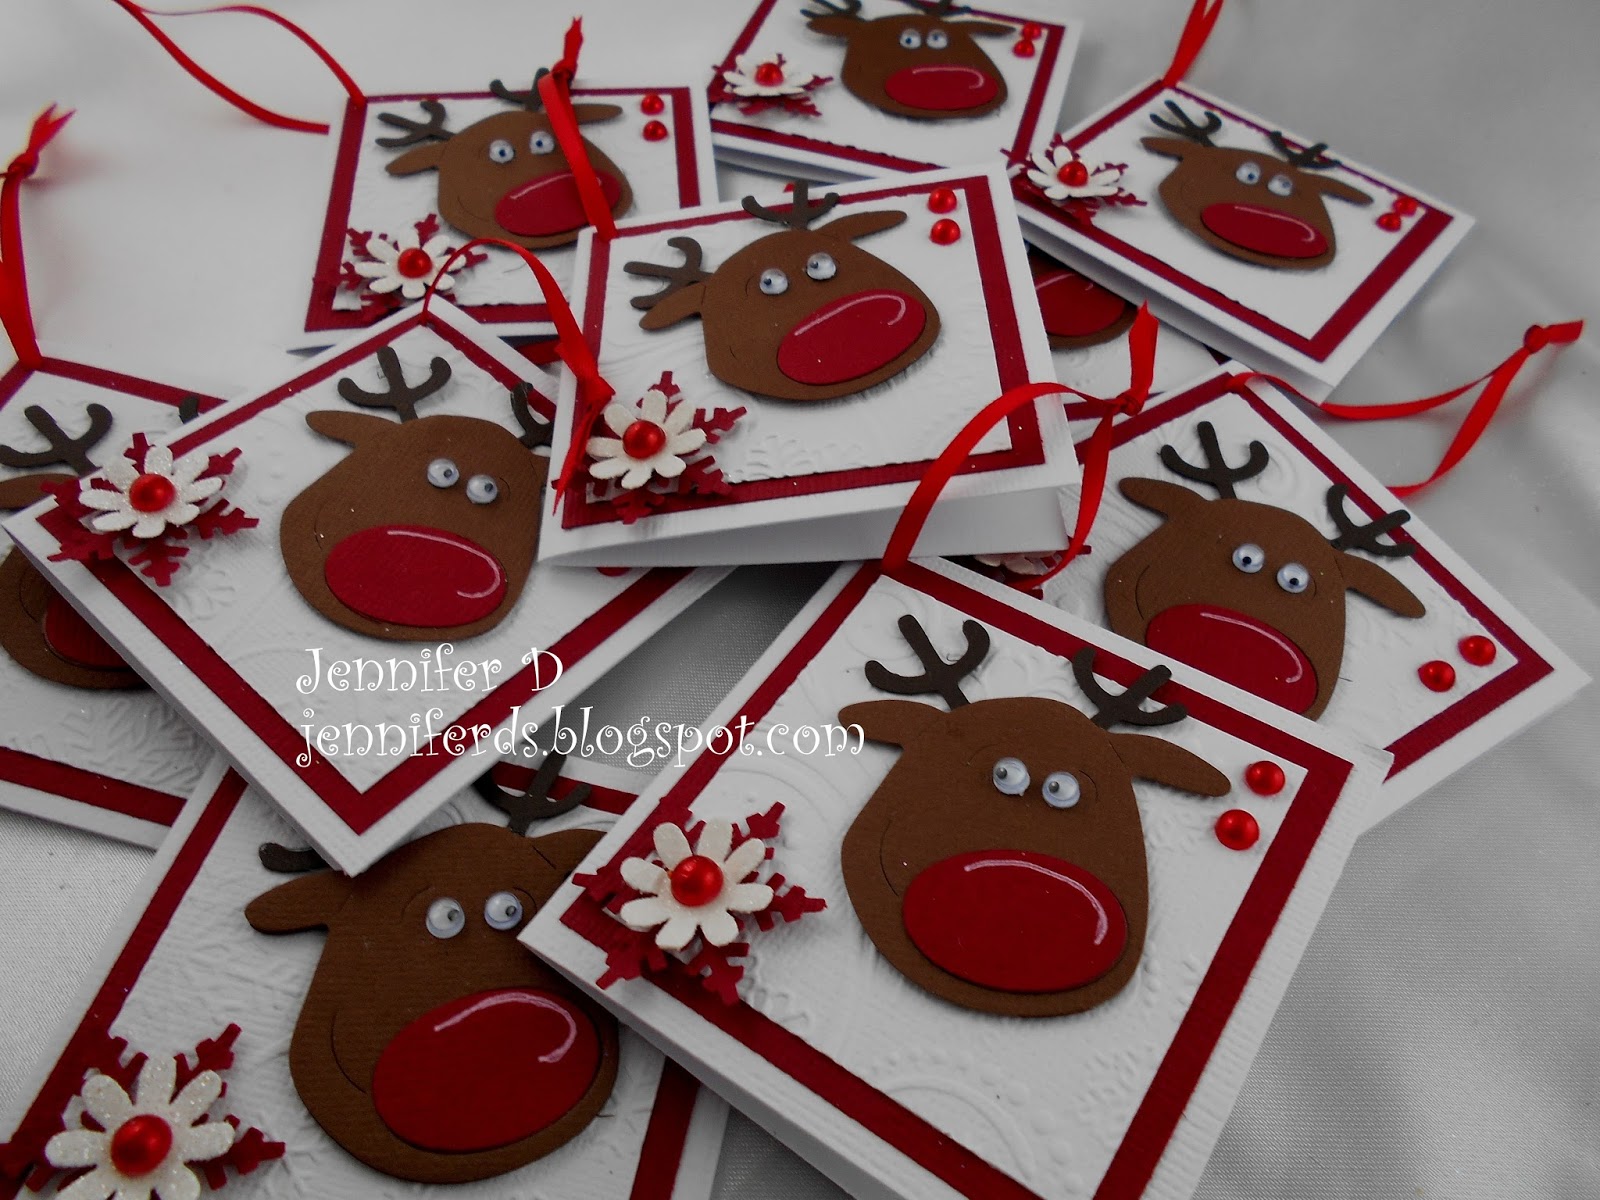 JenniferD's Blog: Reindeer Gift Cards